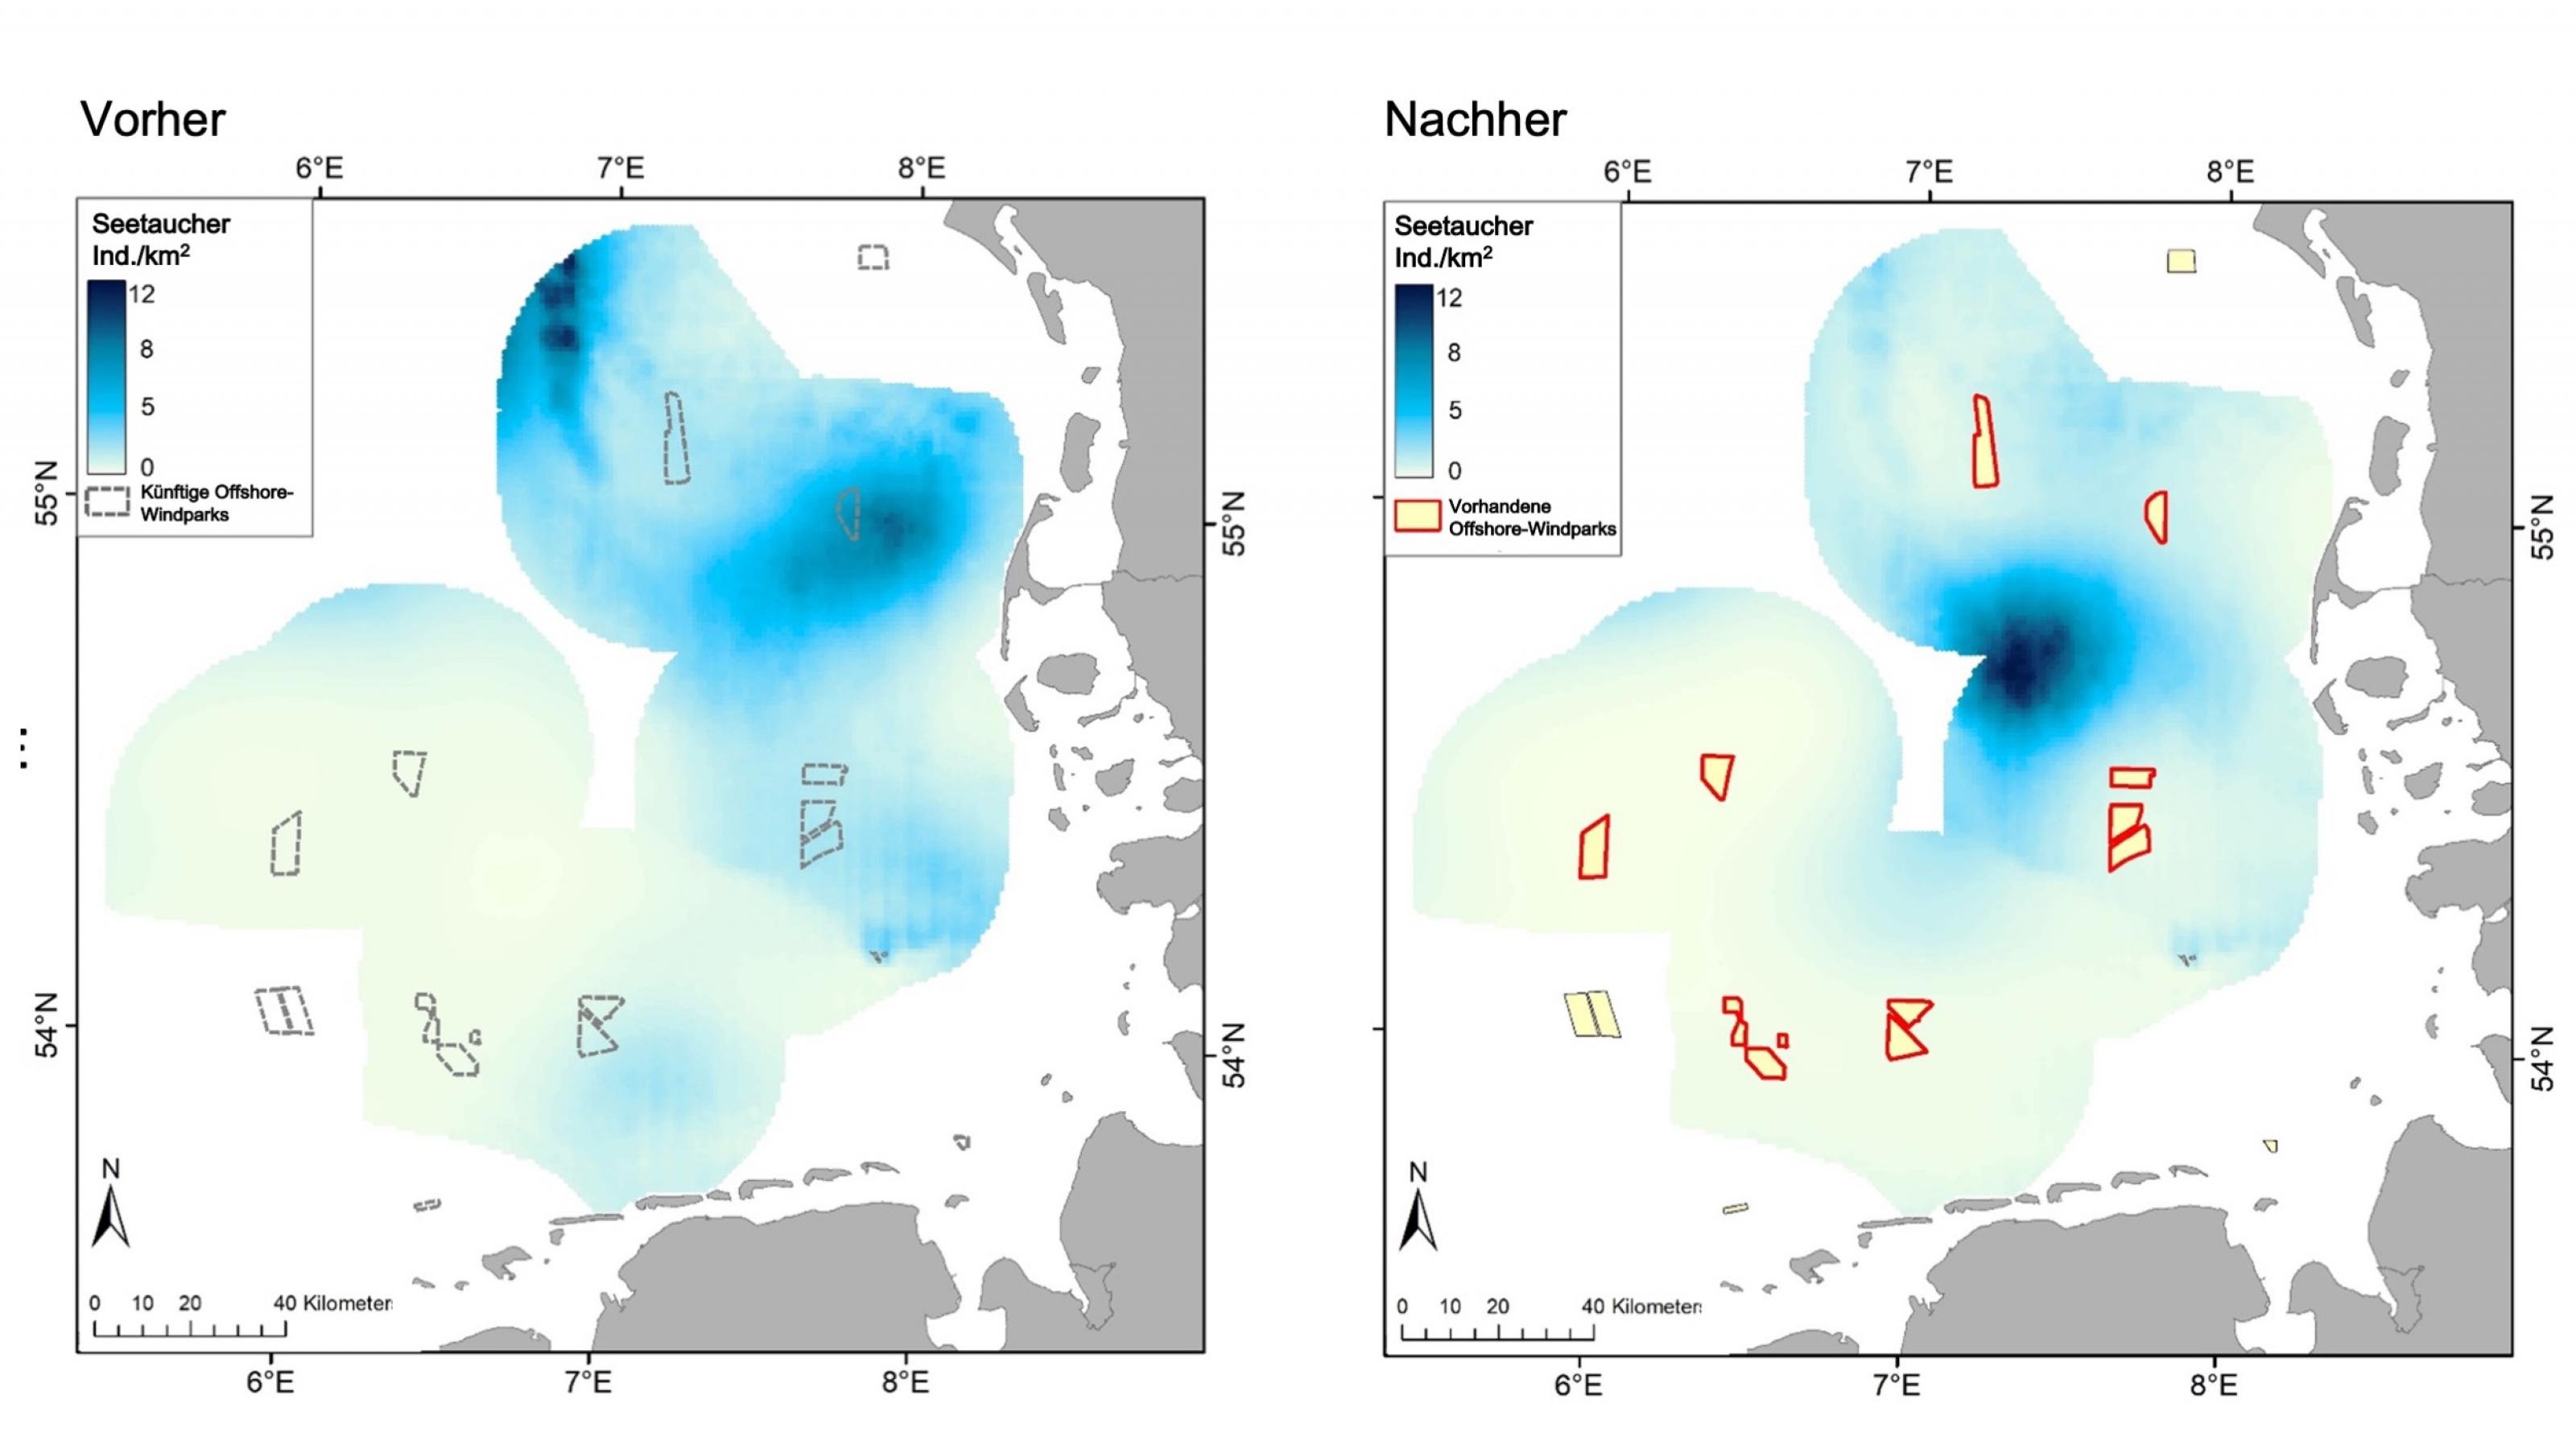 Zwei Landkarten im Vergleich von vor und nach dem Bau der Offshore-Anlagen: Vorher wurden in weiten Teilen der Nordsee Seetaucher beobachtet, nachher konzentrieren sich die Seetaucher auf eine kleine Fläche im Zentrum.